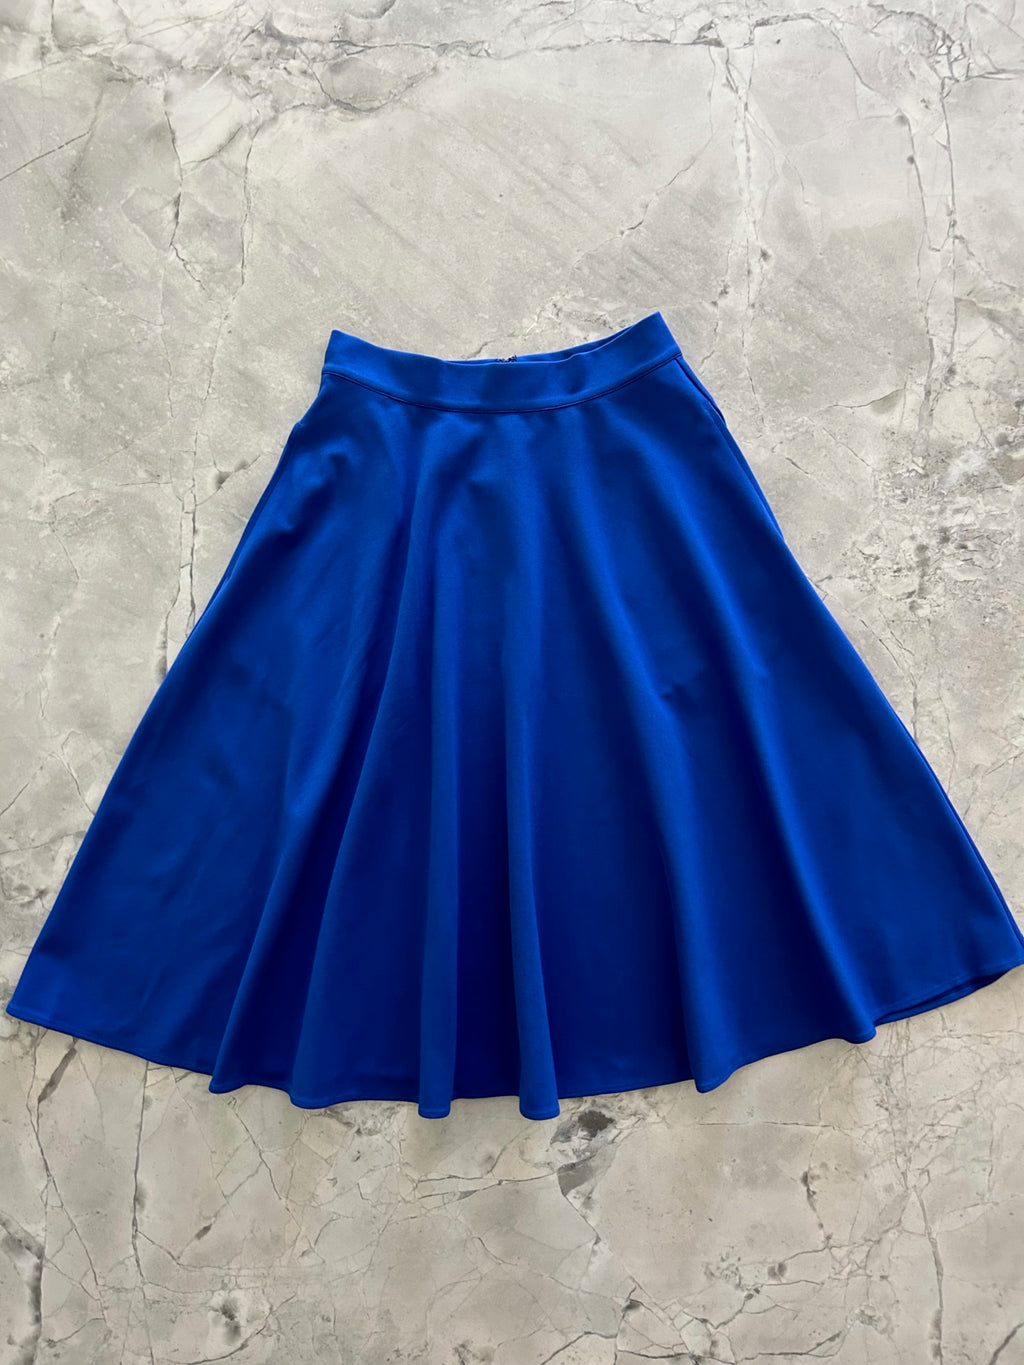 5208 Charlotte Nova Skirt in Blue